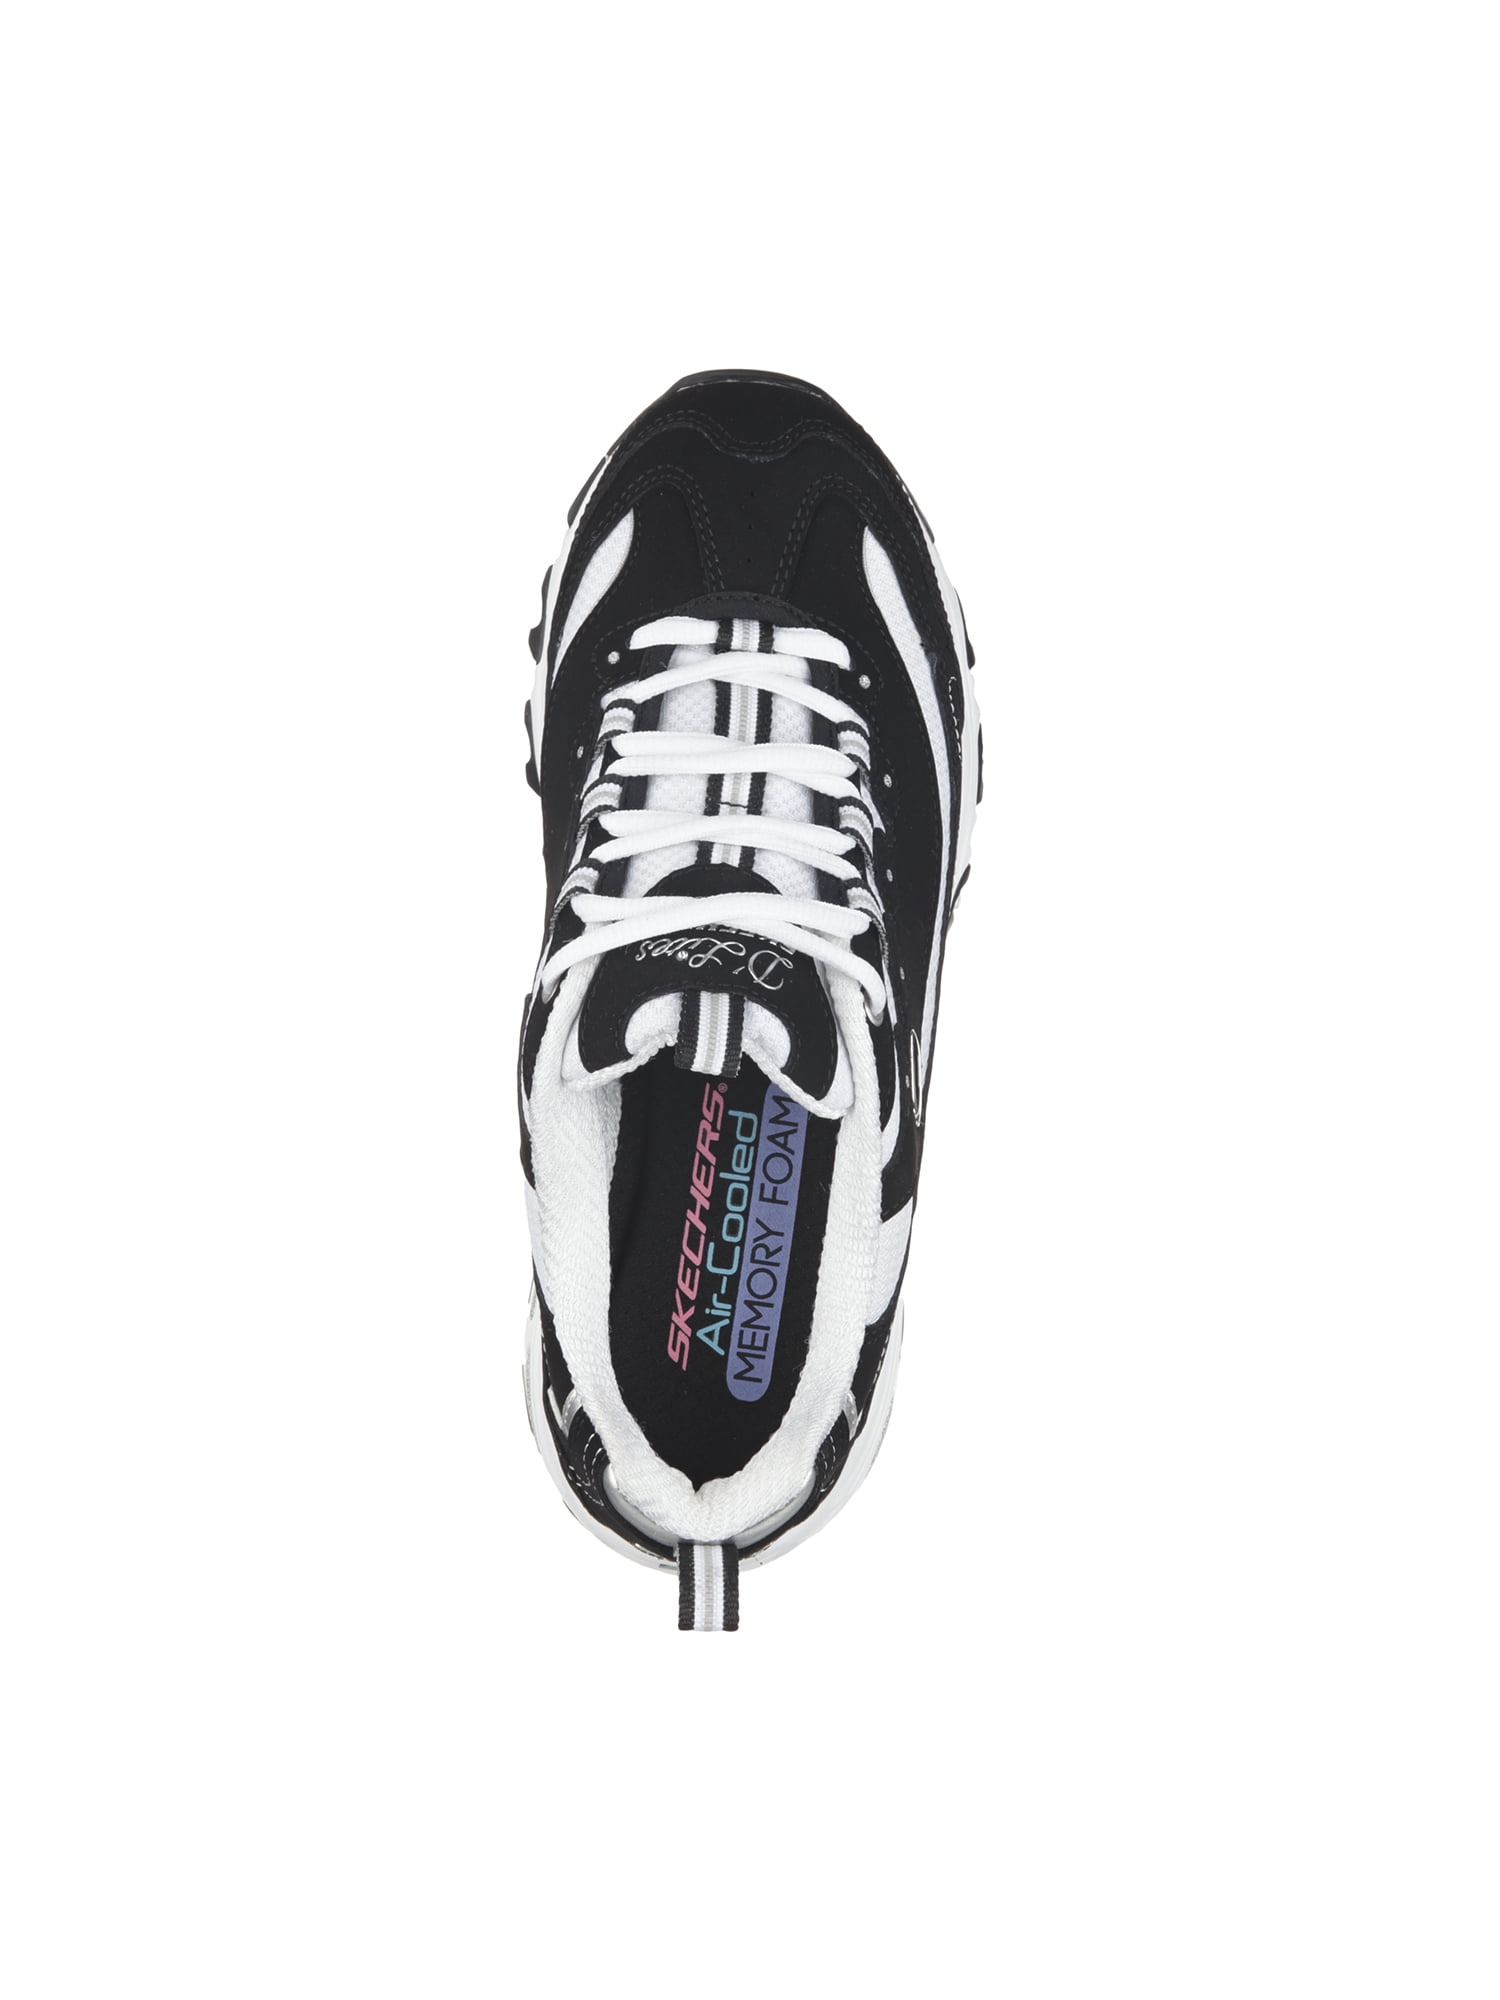 Skechers Women's Sport D'Lites Fan Athletic Sneaker, Wide Width Available - Walmart.com